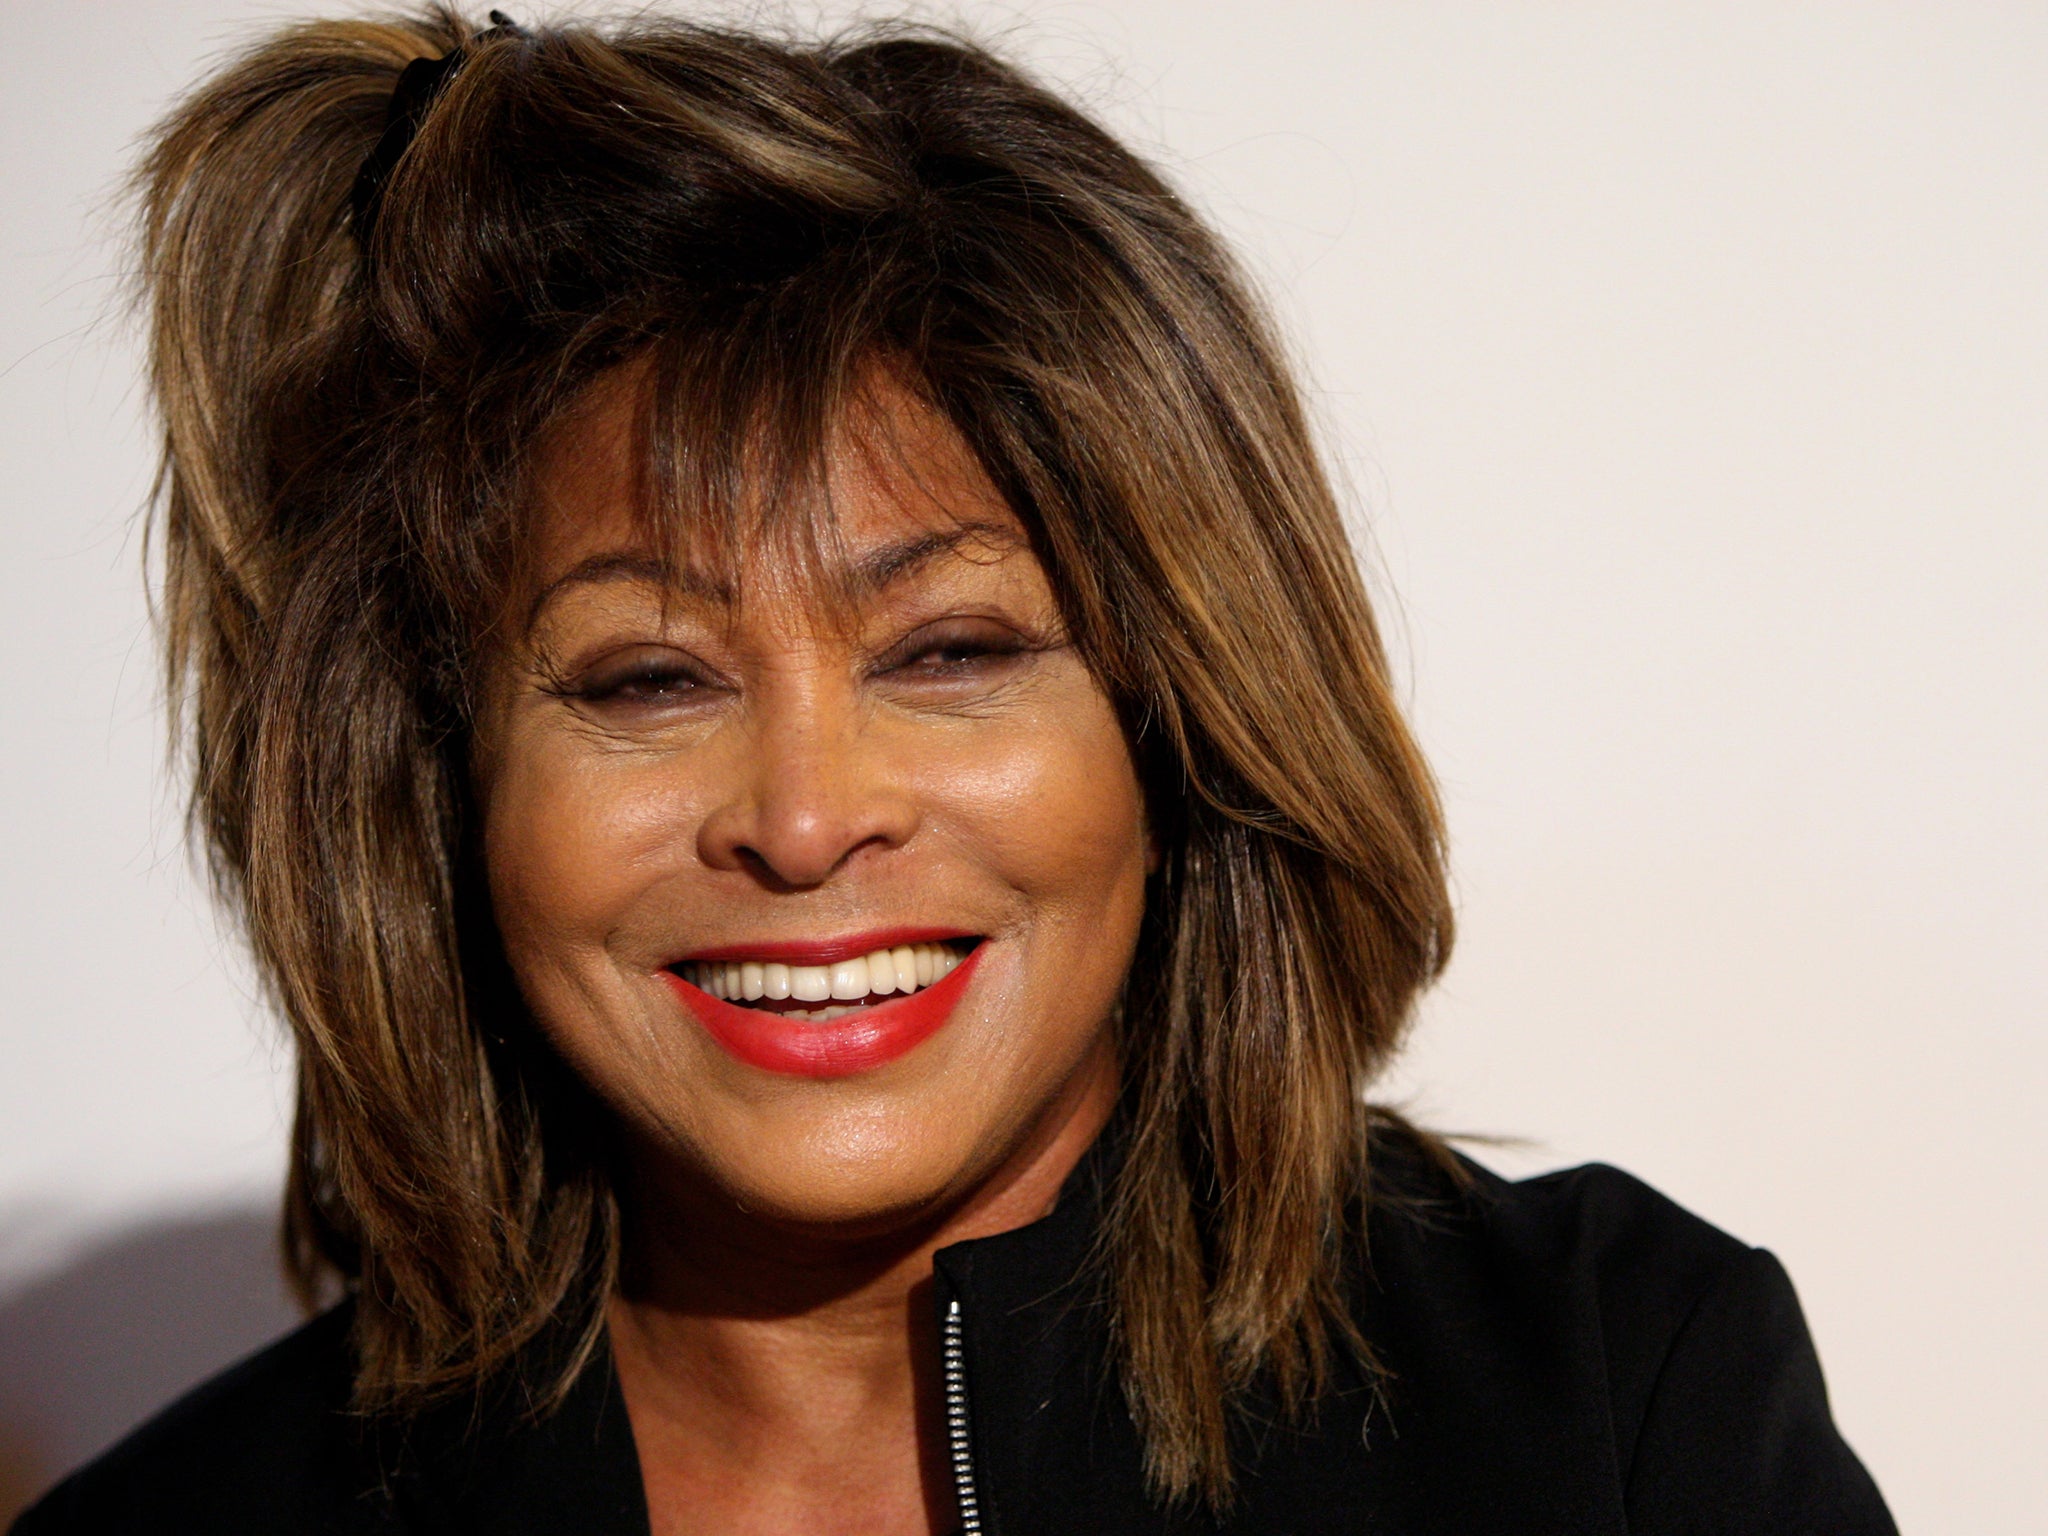 Tina Turner in 2009